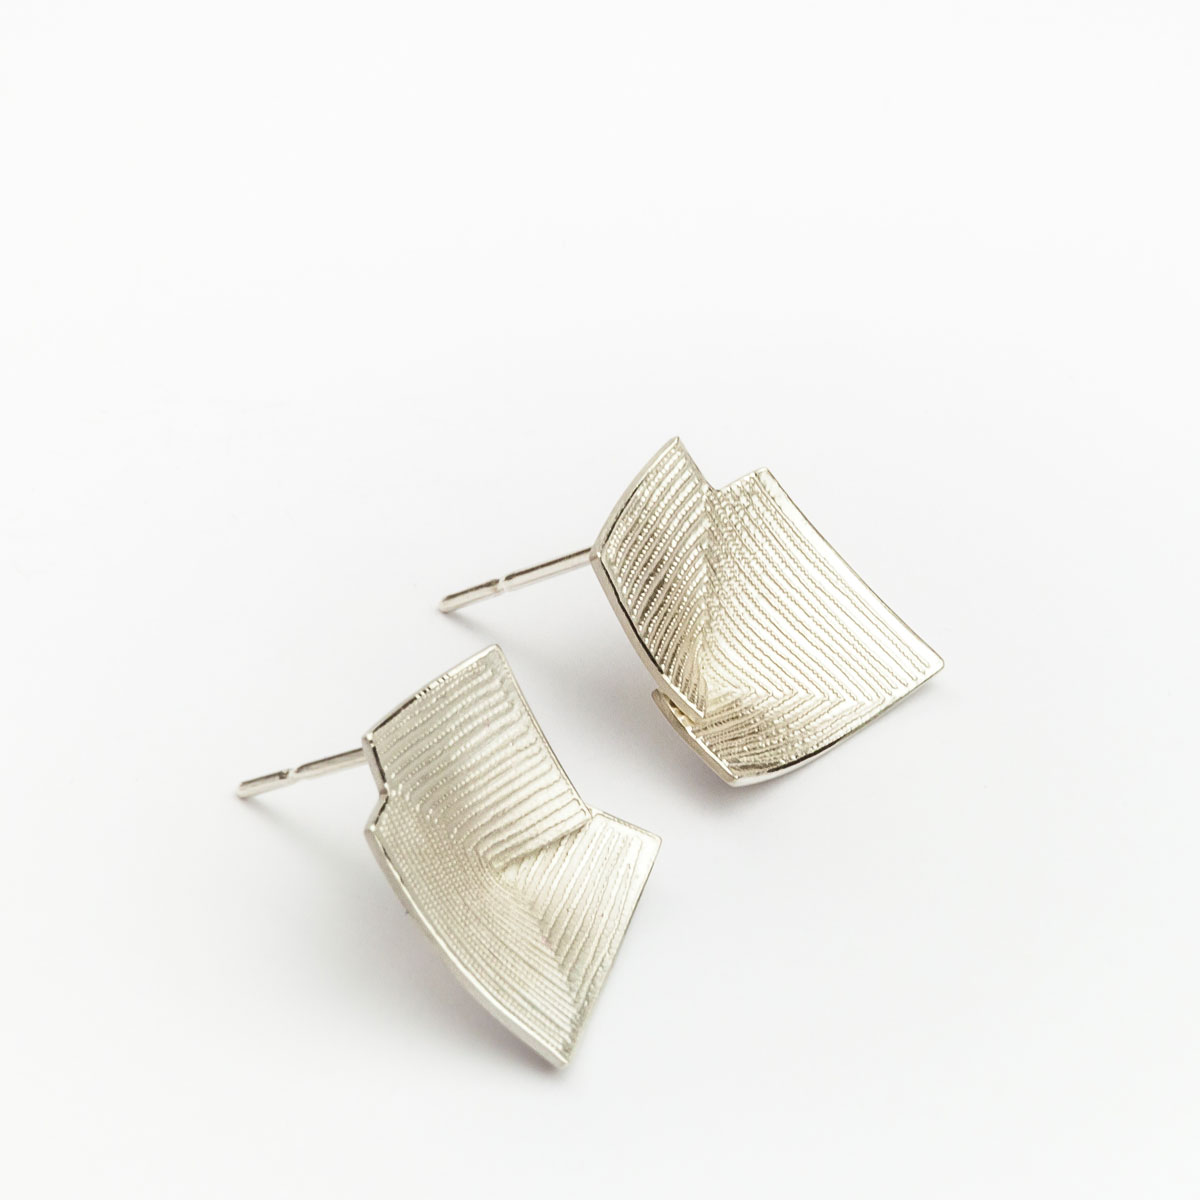 ‘Lines in Motion’ Silver Stud Earrings